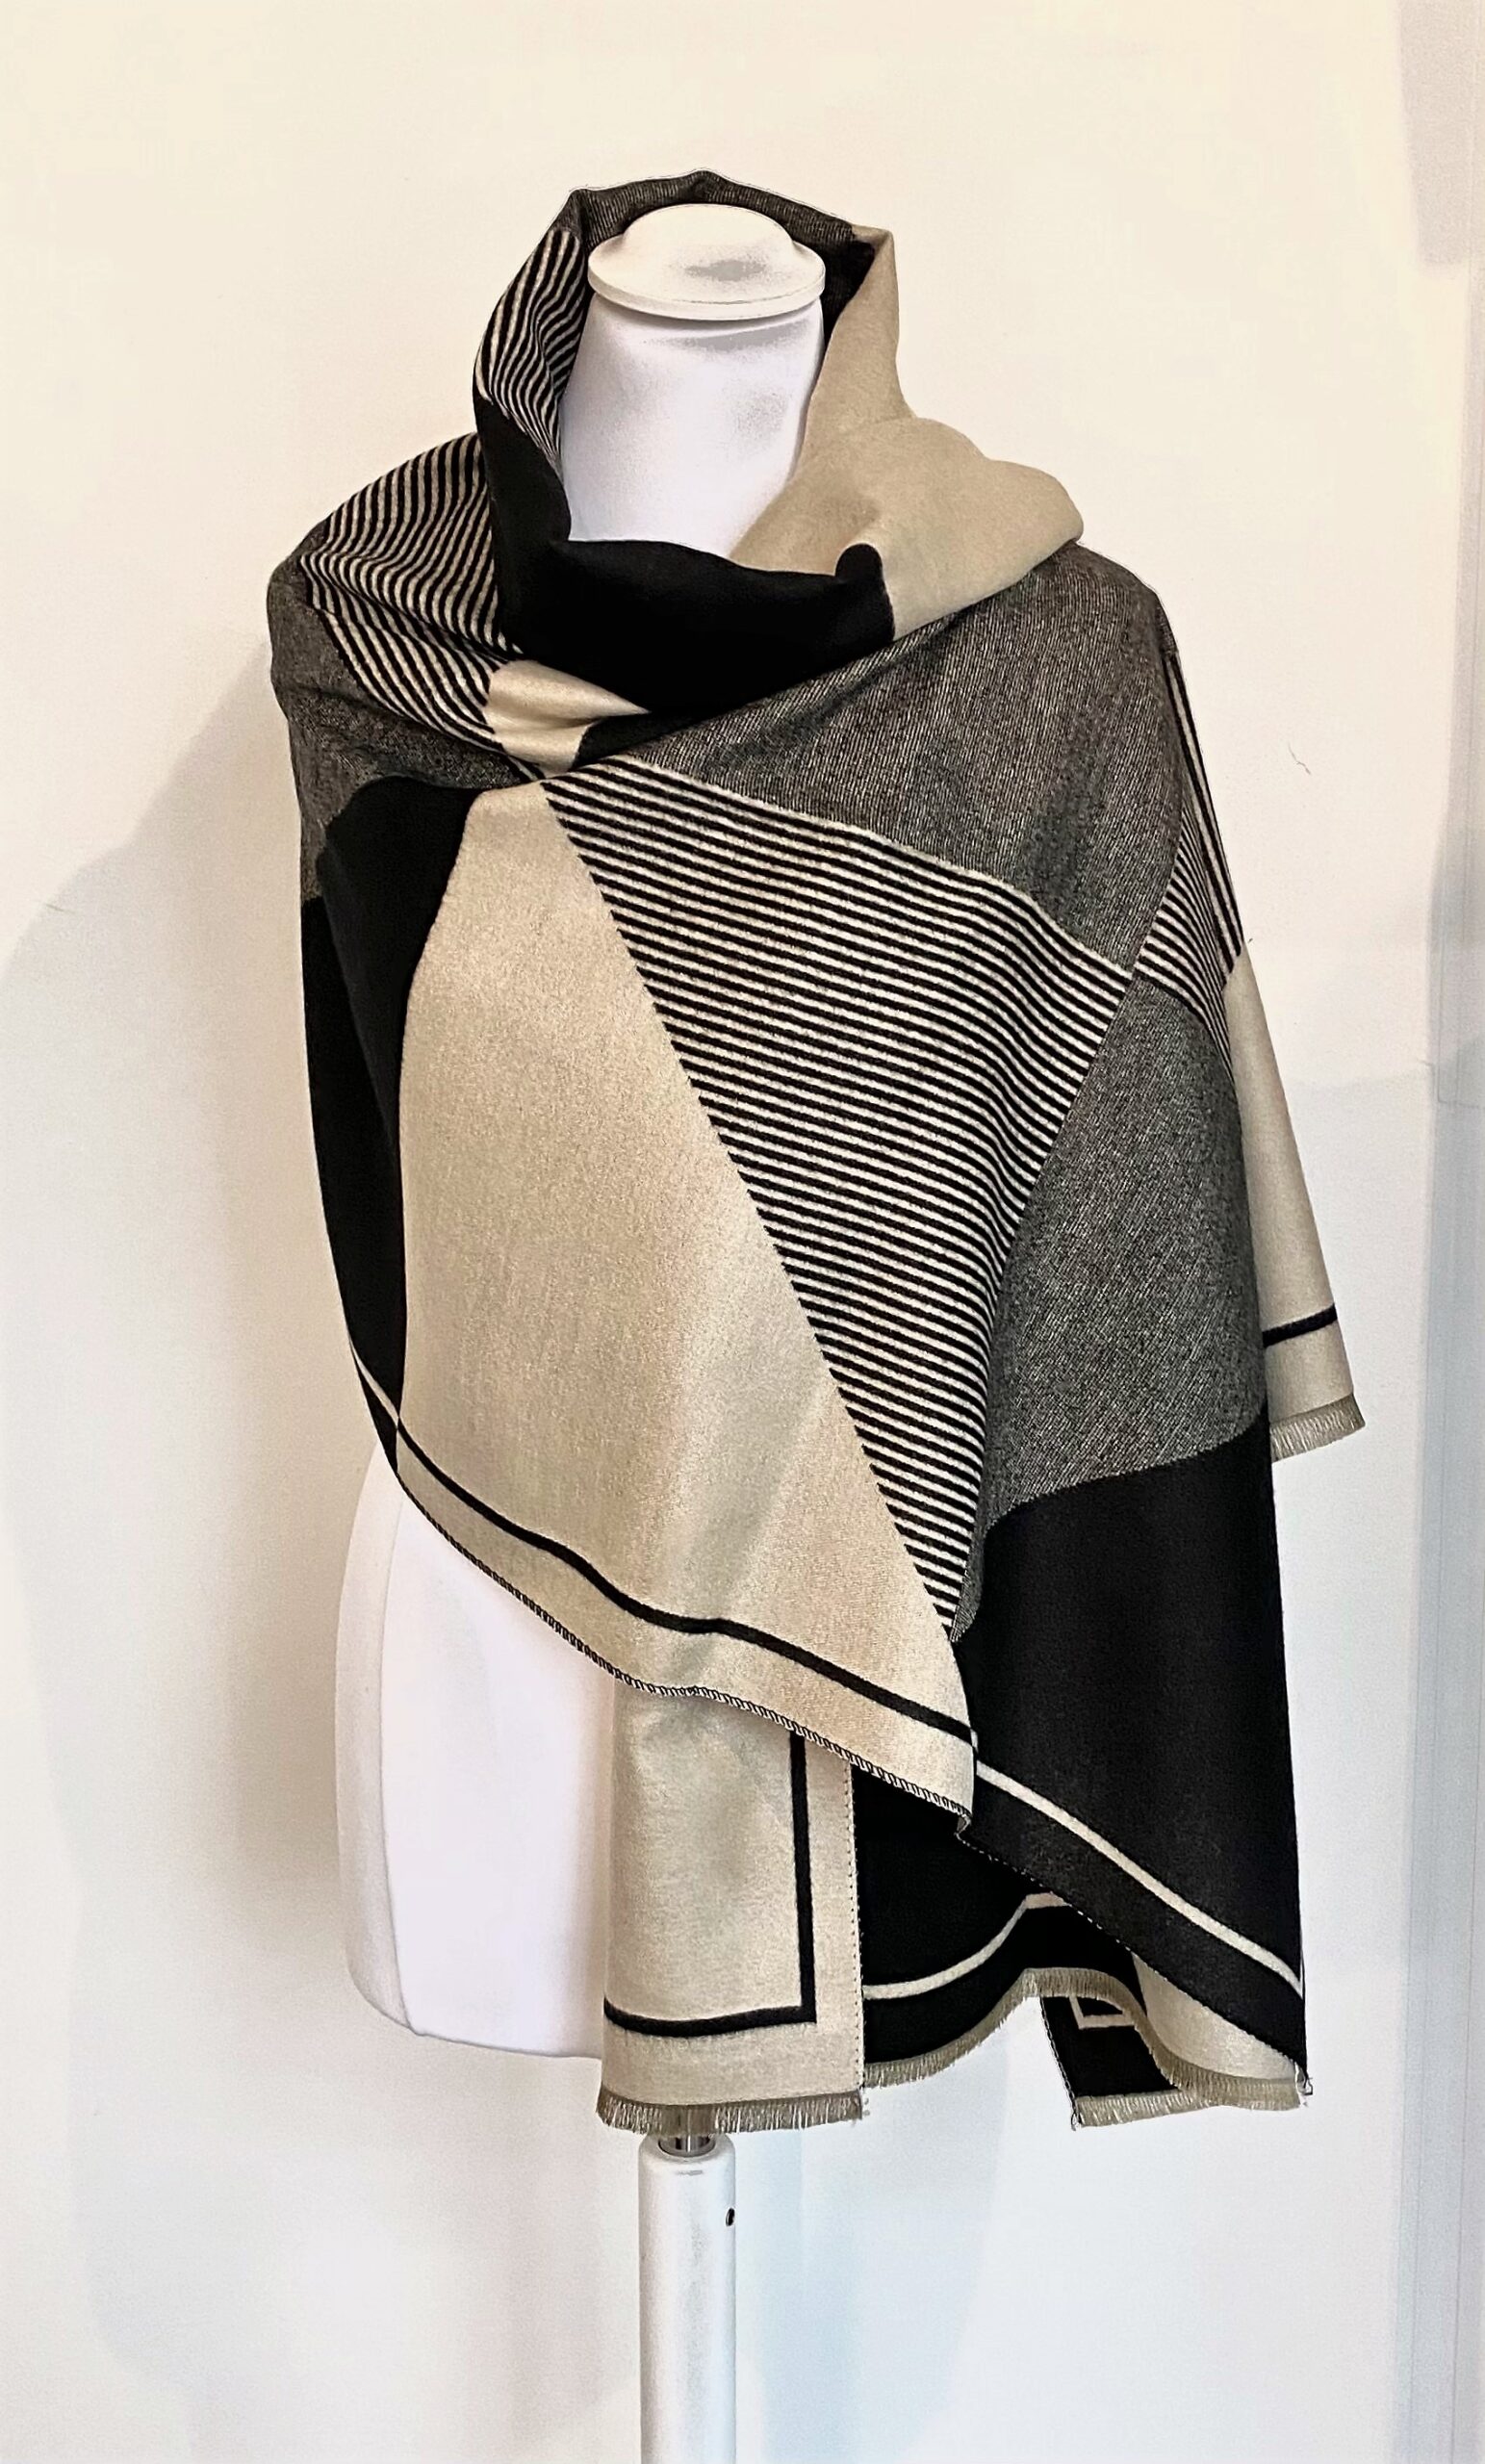 ironie paar koper Josi Louis Pashmina zeer zachte warme sjaal – luxe omslagdoek in cashmere  blend – zwart / beige – JosiLouis